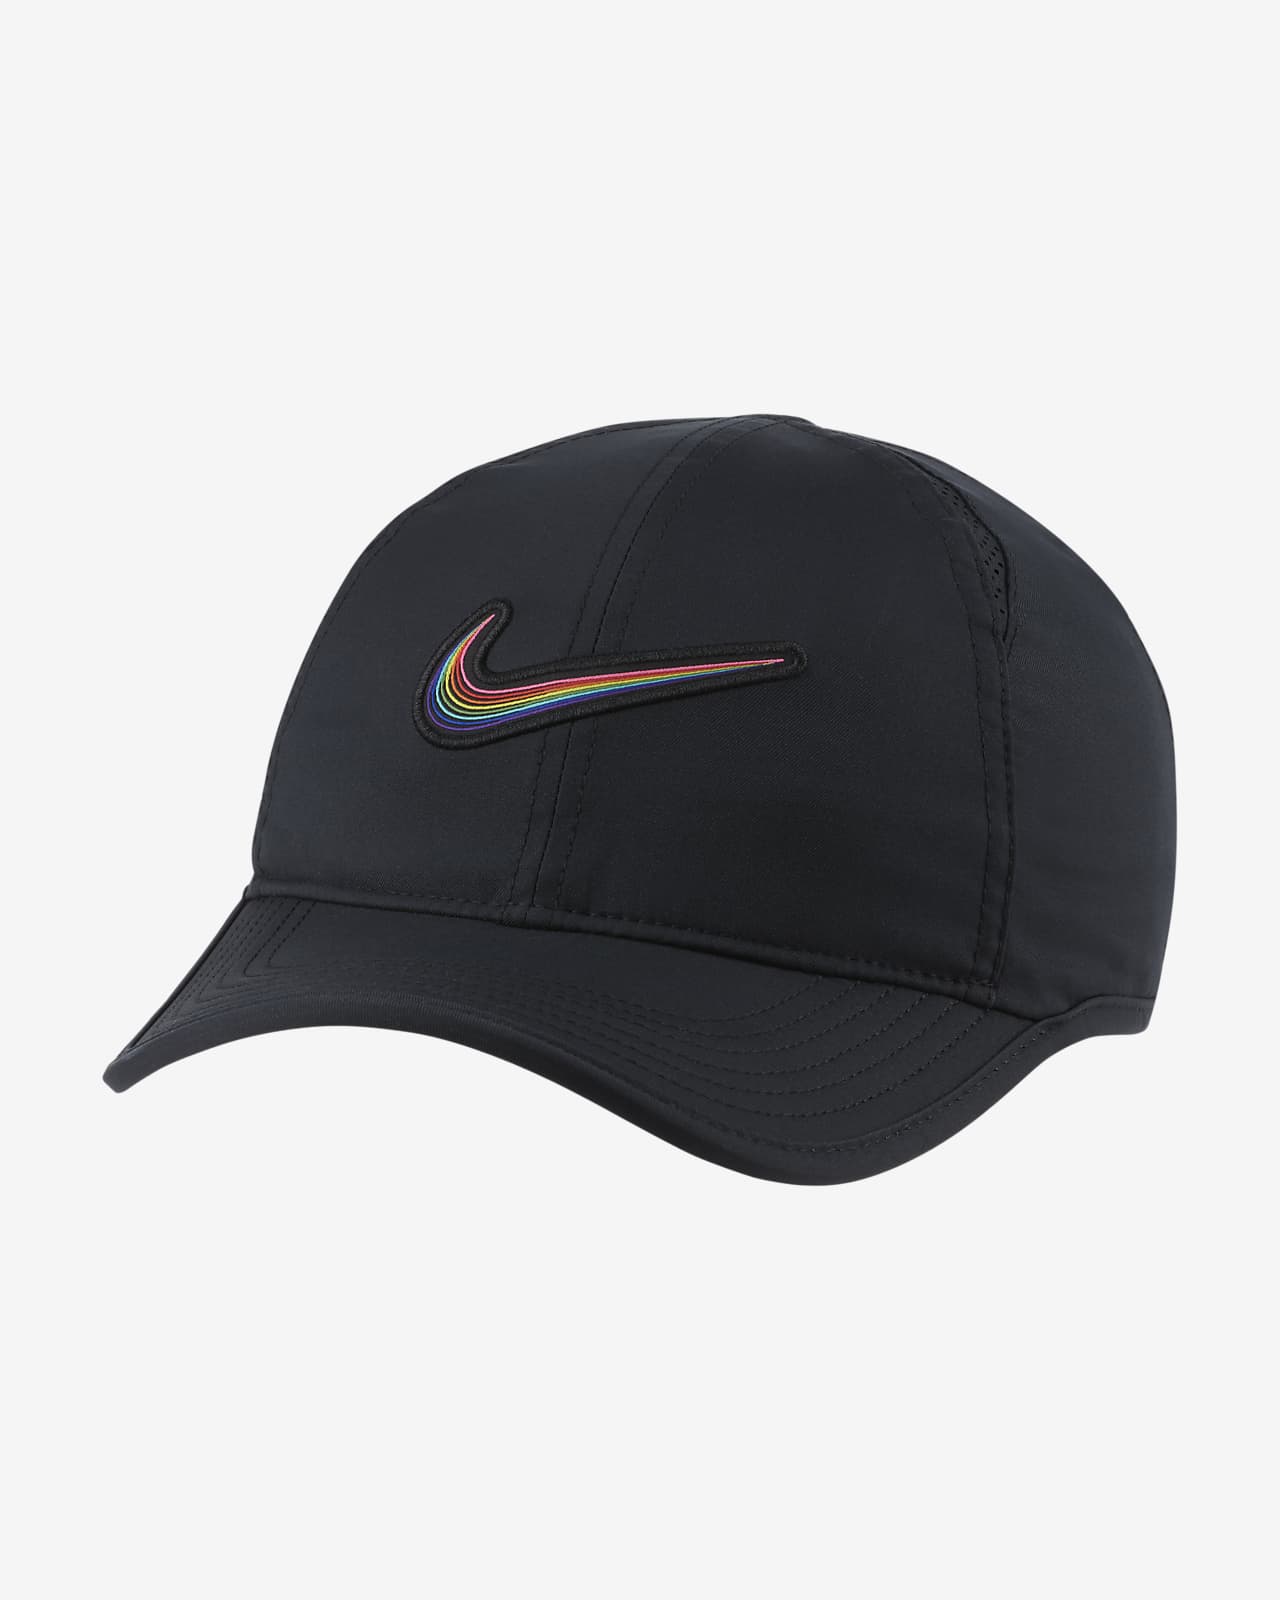 Nike Sportswear True Hat. SG